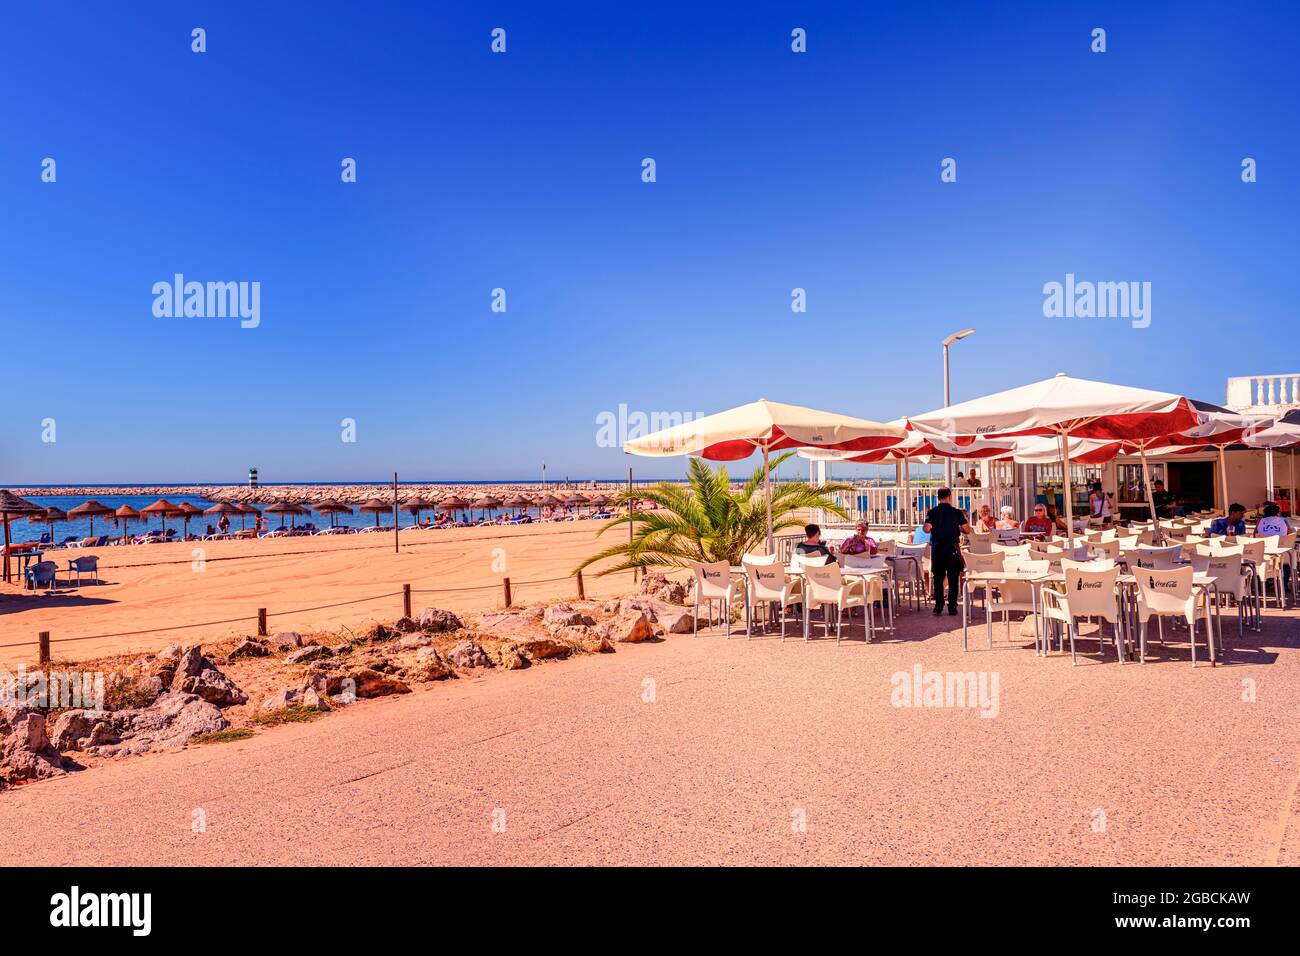 Strandrestaurant-Café am strand praia rosa branca Quarteira mit Sonnenschirmen und Liegestühlen im Hintergrund. Quarteira algarve Portugal Stockfoto